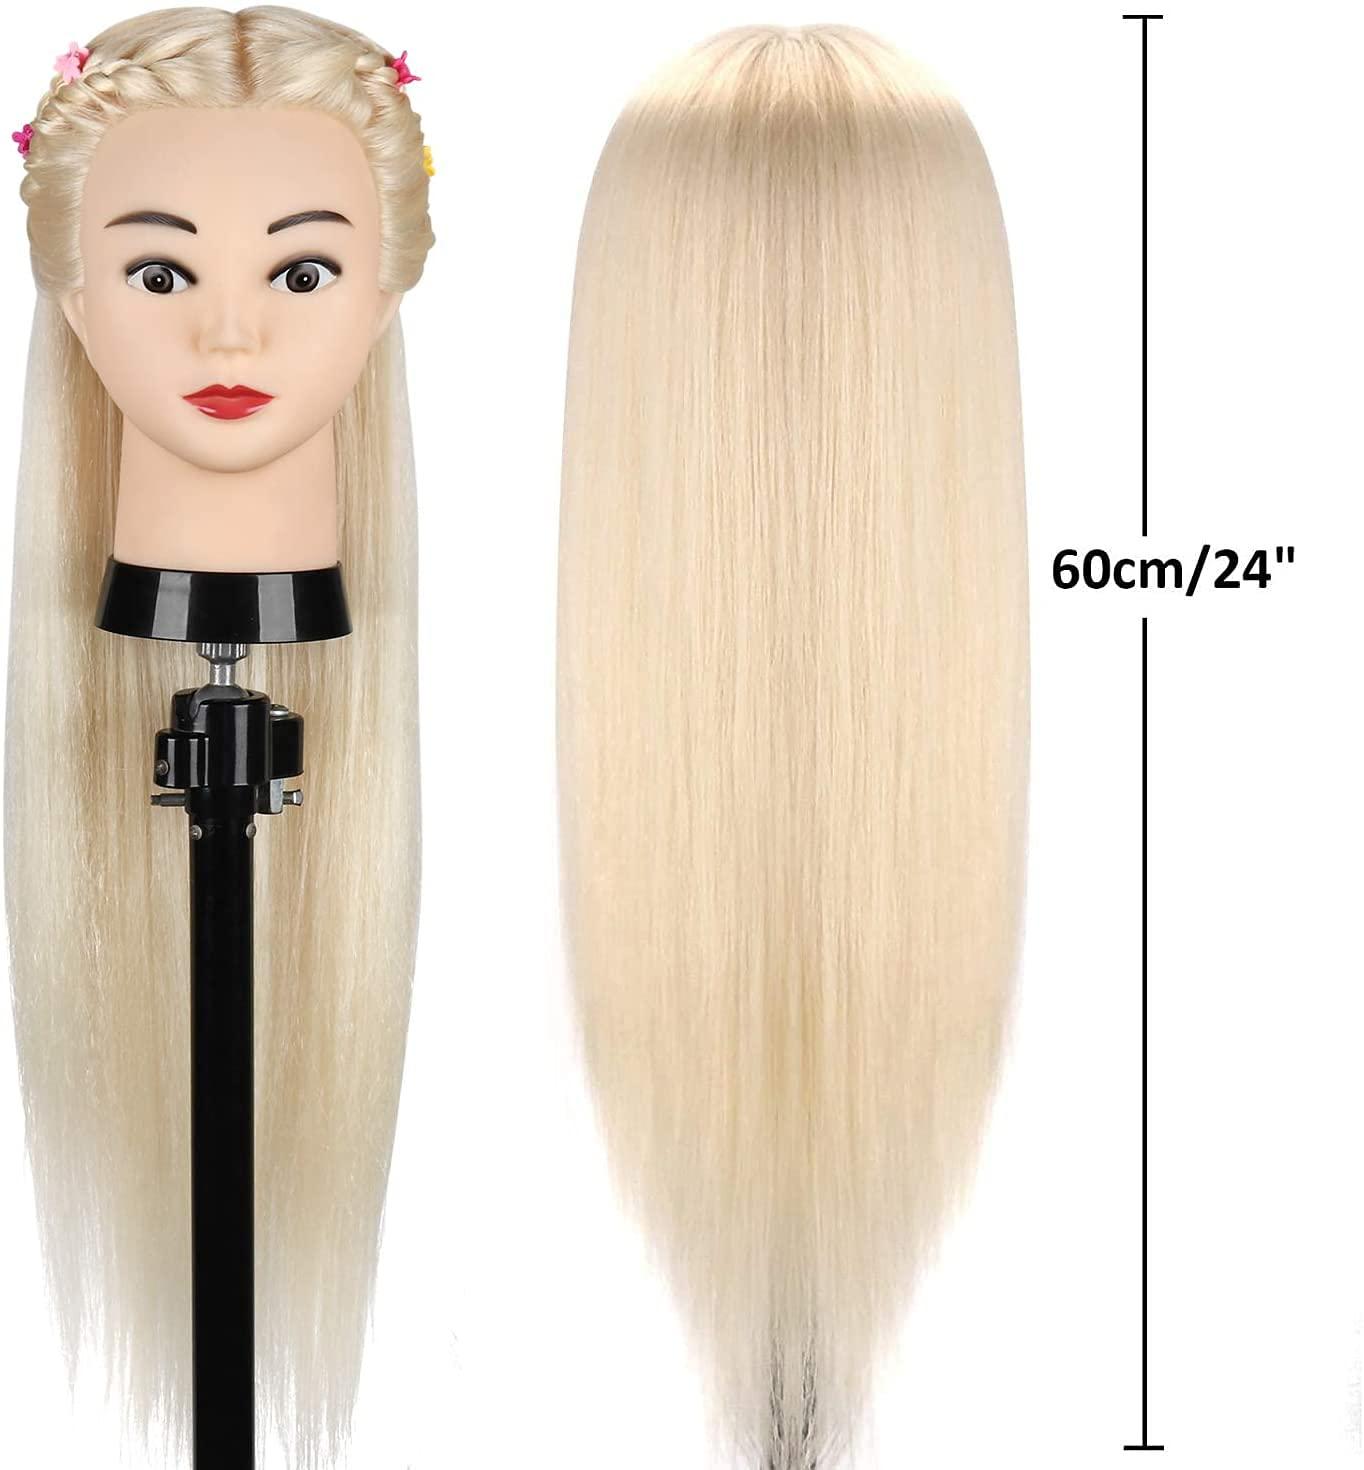 Training Head Mannequin Head with Human Hair 100% Real Hair Manikin Head  Cosmest - Wigs & Hair Pieces